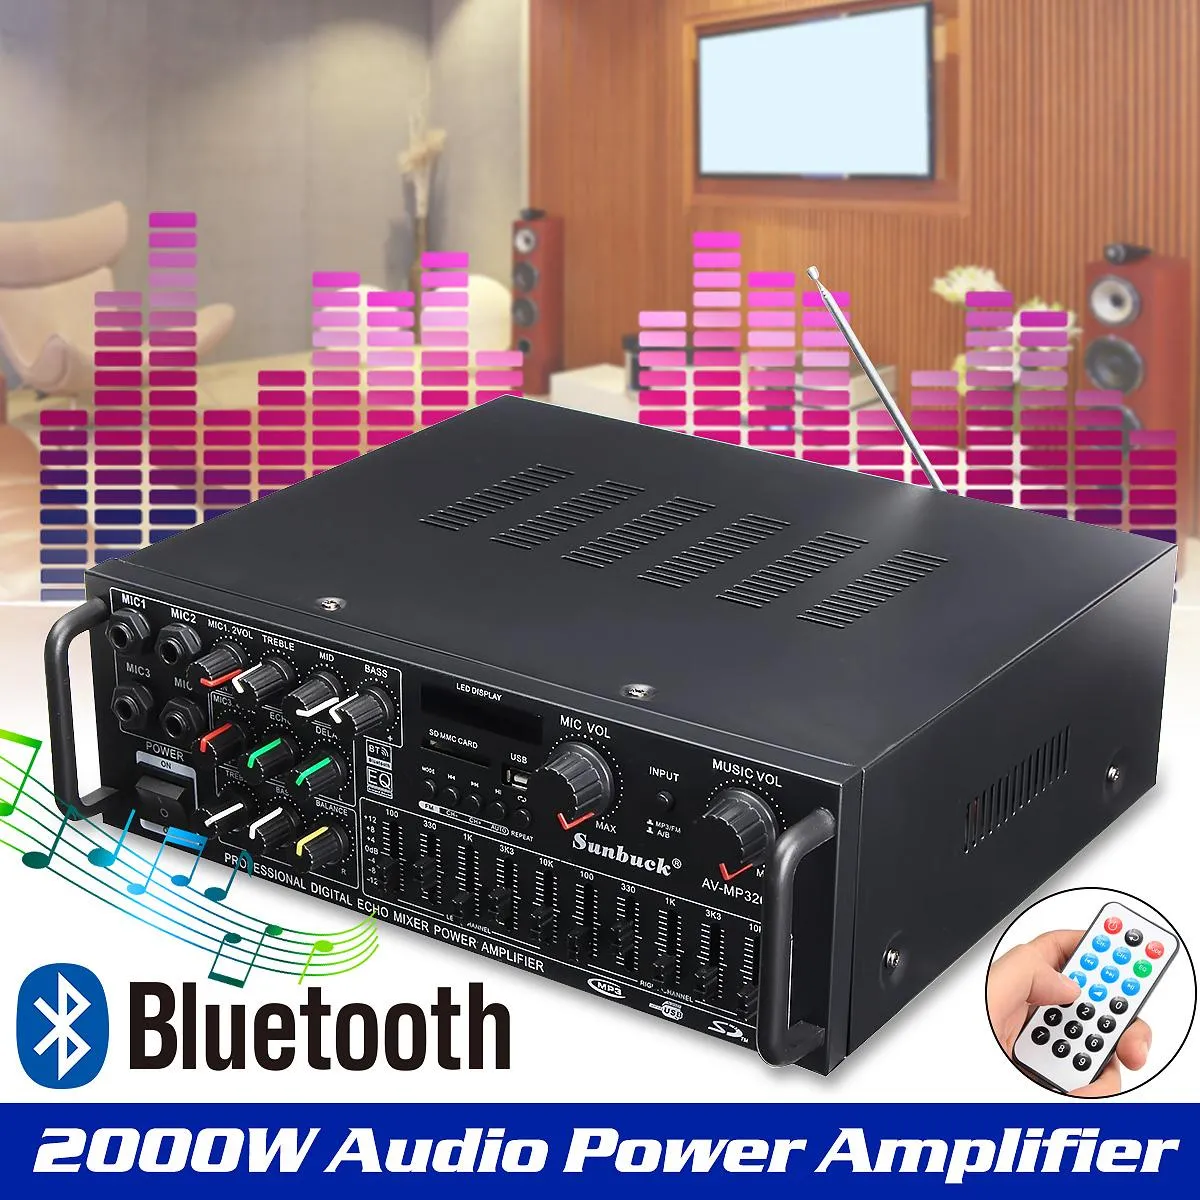 新品】 Pyle Wireless Bluetooth Power Amplifier System 200W Dual Channel  Sound Audio Stereo Receiver w USB, SD, AUX, MIC IN Echo, Radio, LCD 並行輸入 